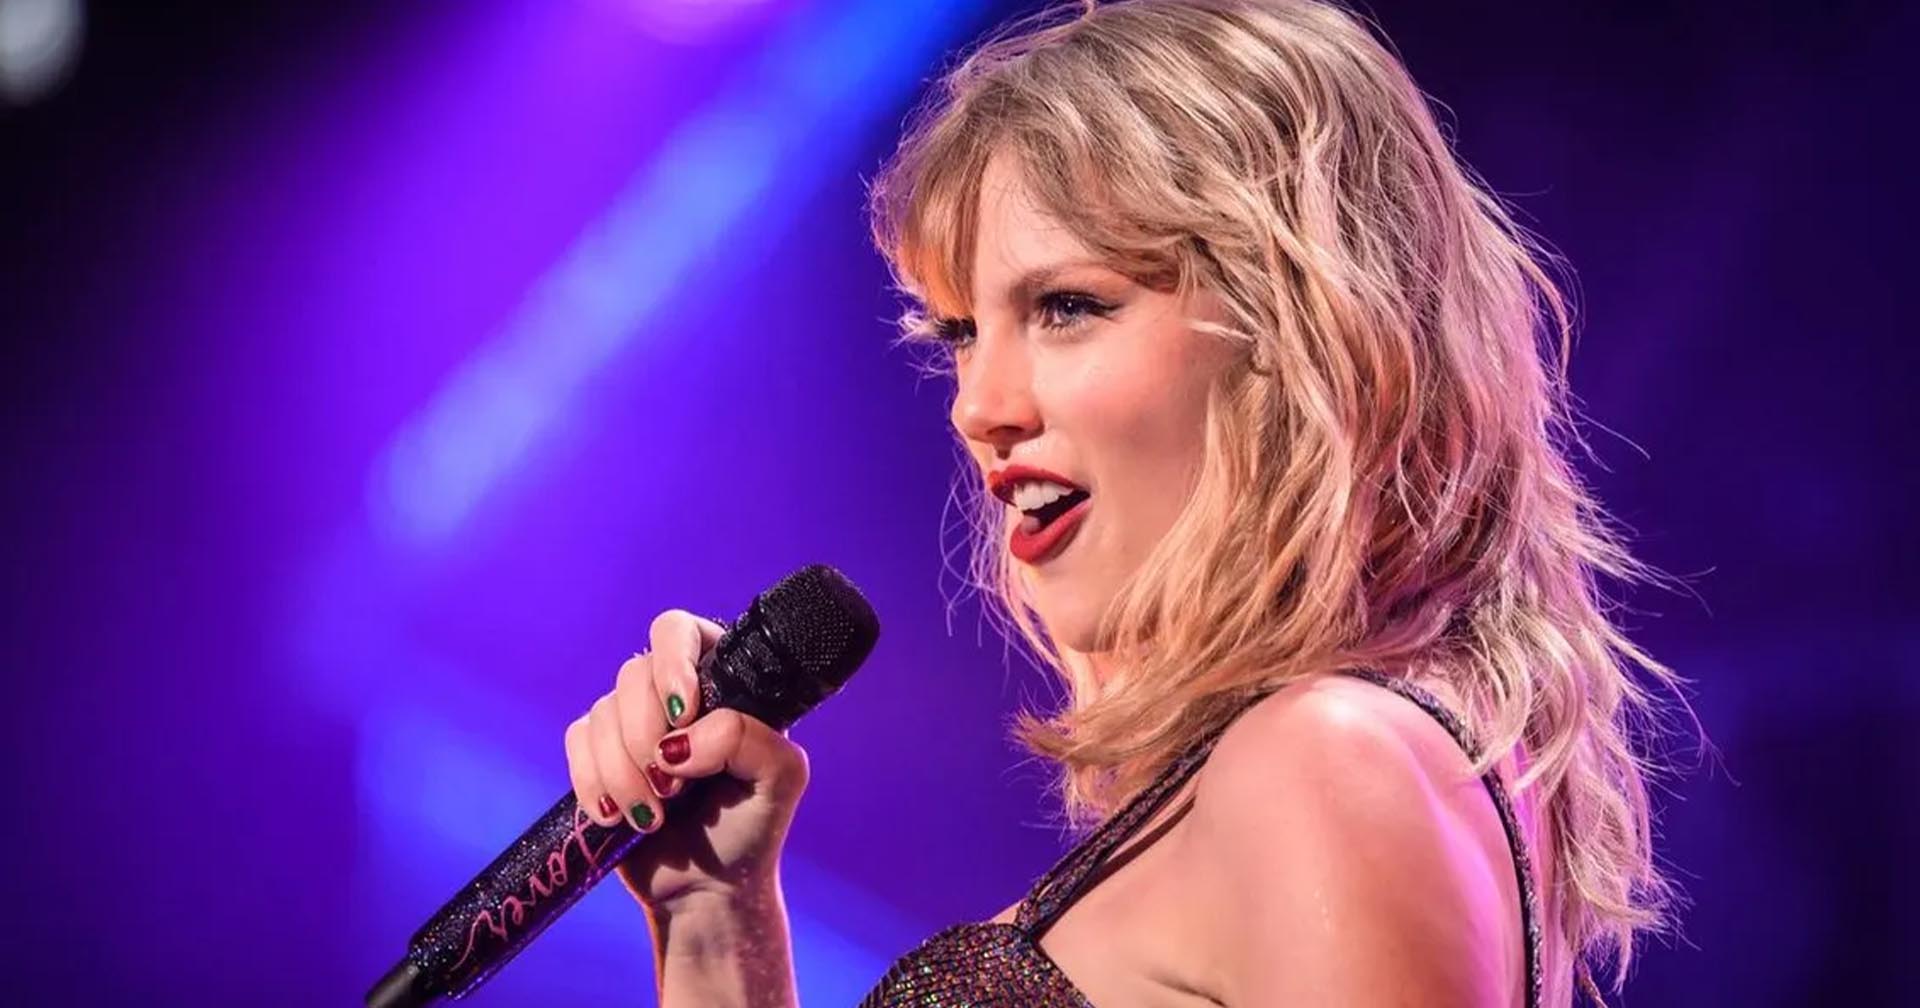 Eras Tour ของ Taylor Swift จะทำรายได้เกิน 1,400 ล้านเหรียญ ขึ้นแท่นทัวร์คอนเสิร์ตที่รายได้สูงที่สุดในประวัติศาสตร์